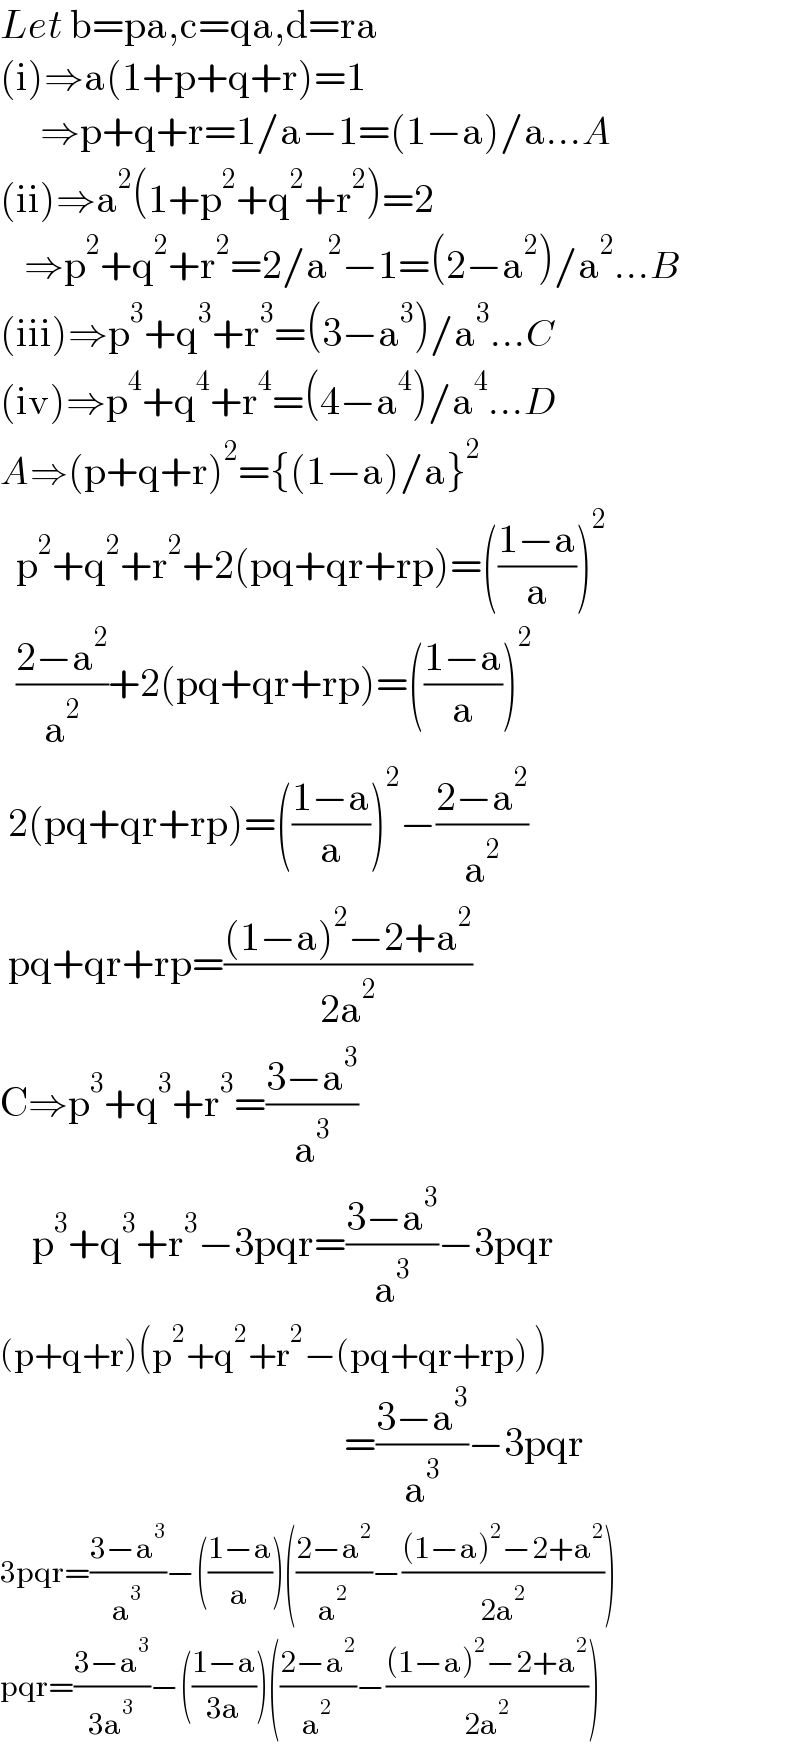 Let b=pa,c=qa,d=ra  (i)⇒a(1+p+q+r)=1       ⇒p+q+r=1/a−1=(1−a)/a...A  (ii)⇒a^2 (1+p^2 +q^2 +r^2 )=2     ⇒p^2 +q^2 +r^2 =2/a^2 −1=(2−a^2 )/a^2 ...B  (iii)⇒p^3 +q^3 +r^3 =(3−a^3 )/a^3 ...C  (iv)⇒p^4 +q^4 +r^4 =(4−a^4 )/a^4 ...D  A⇒(p+q+r)^2 ={(1−a)/a}^2     p^2 +q^2 +r^2 +2(pq+qr+rp)=(((1−a)/a))^2     ((2−a^2 )/a^2 )+2(pq+qr+rp)=(((1−a)/a))^2    2(pq+qr+rp)=(((1−a)/a))^2 −((2−a^2 )/a^2 )   pq+qr+rp=(((1−a)^2 −2+a^2 )/(2a^2 ))  C⇒p^3 +q^3 +r^3 =((3−a^3 )/a^3 )      p^3 +q^3 +r^3 −3pqr=((3−a^3 )/a^3 )−3pqr  (p+q+r)(p^2 +q^2 +r^2 −(pq+qr+rp) )                                             =((3−a^3 )/a^3 )−3pqr  3pqr=((3−a^3 )/a^3 )−(((1−a)/a))(((2−a^2 )/a^2 )−(((1−a)^2 −2+a^2 )/(2a^2 )))  pqr=((3−a^3 )/(3a^3 ))−(((1−a)/(3a)))(((2−a^2 )/a^2 )−(((1−a)^2 −2+a^2 )/(2a^2 )))  